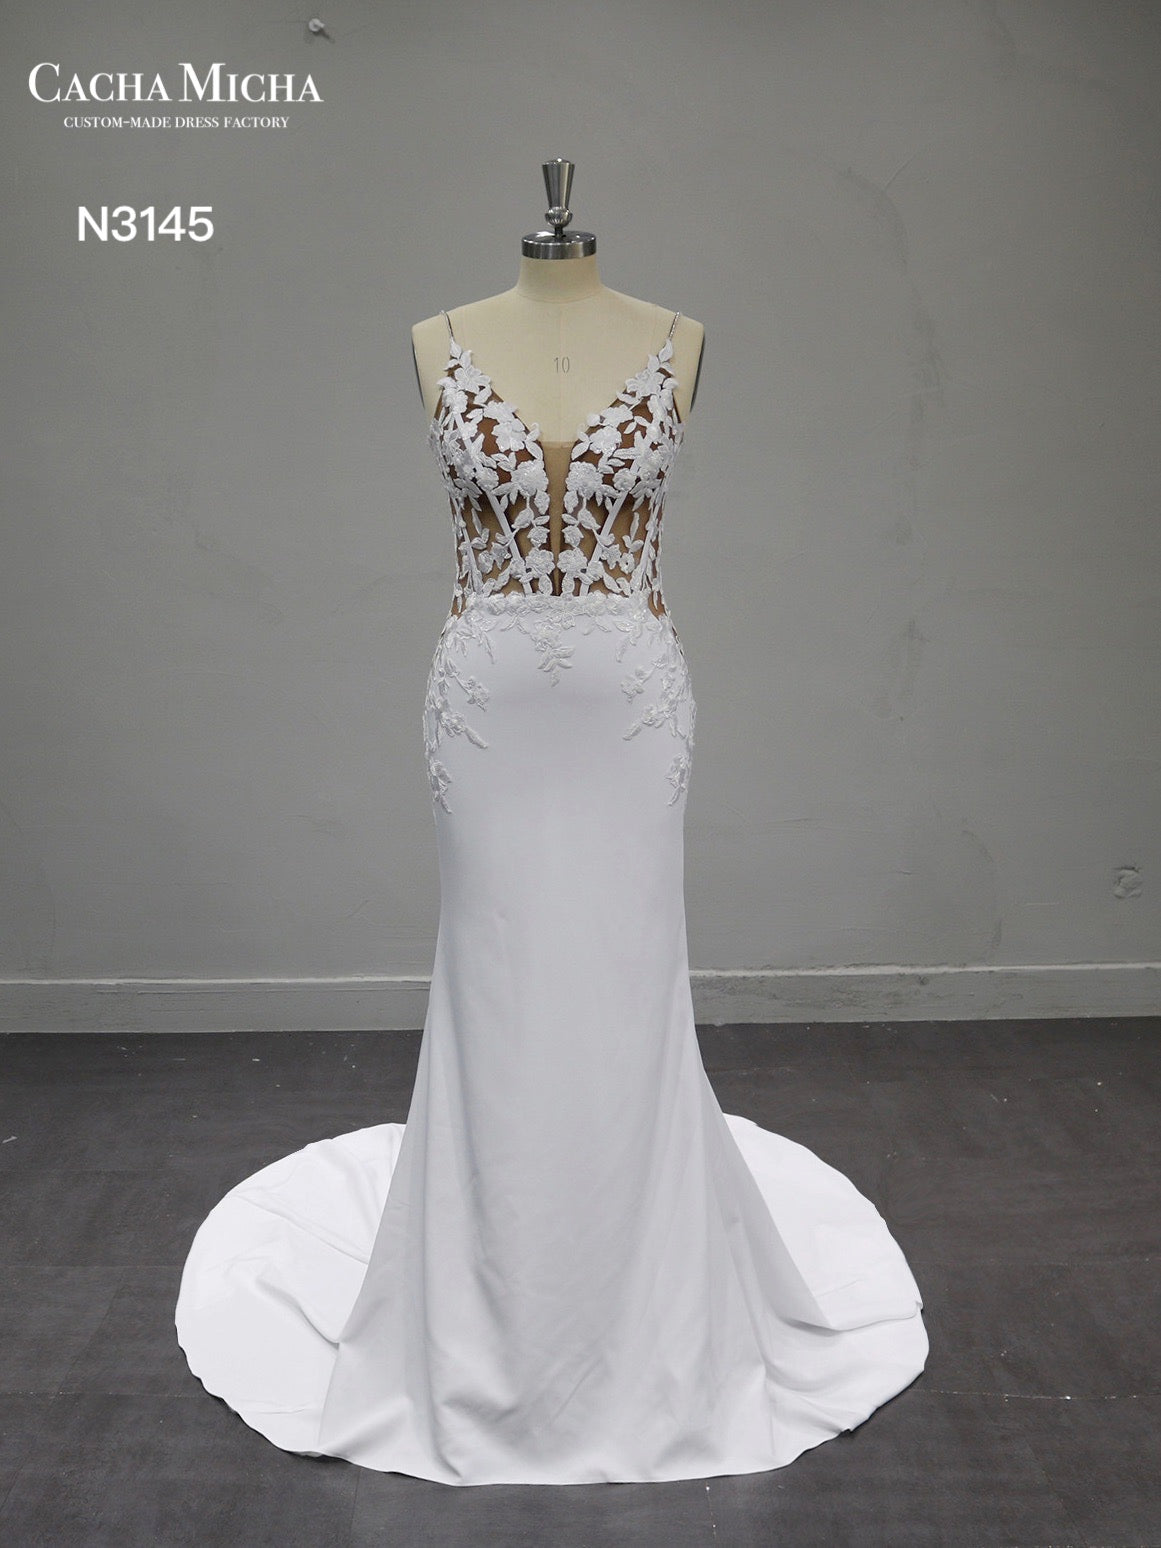 Nude Top Lace Applique Crepe Mermaid Wedding Dress N3145